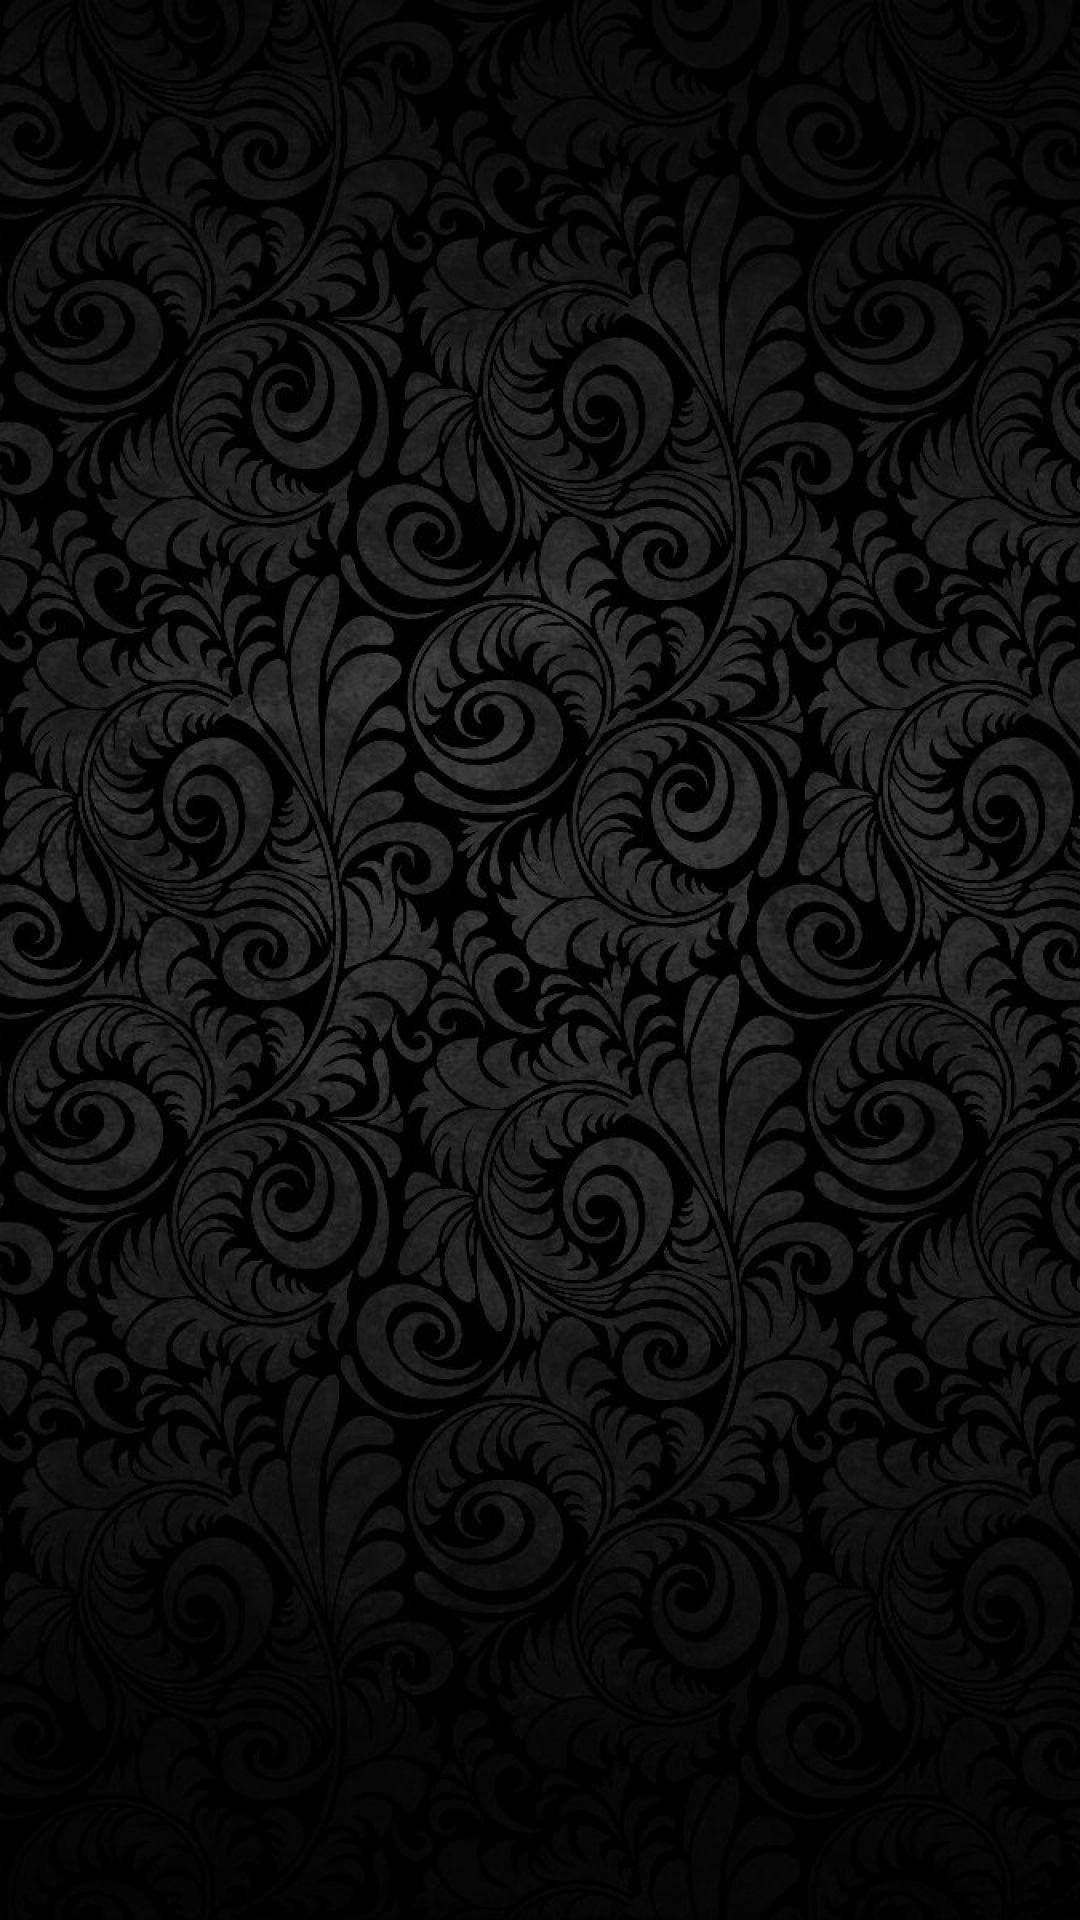 Black Floral Iphone 6s Plus Wallpaper